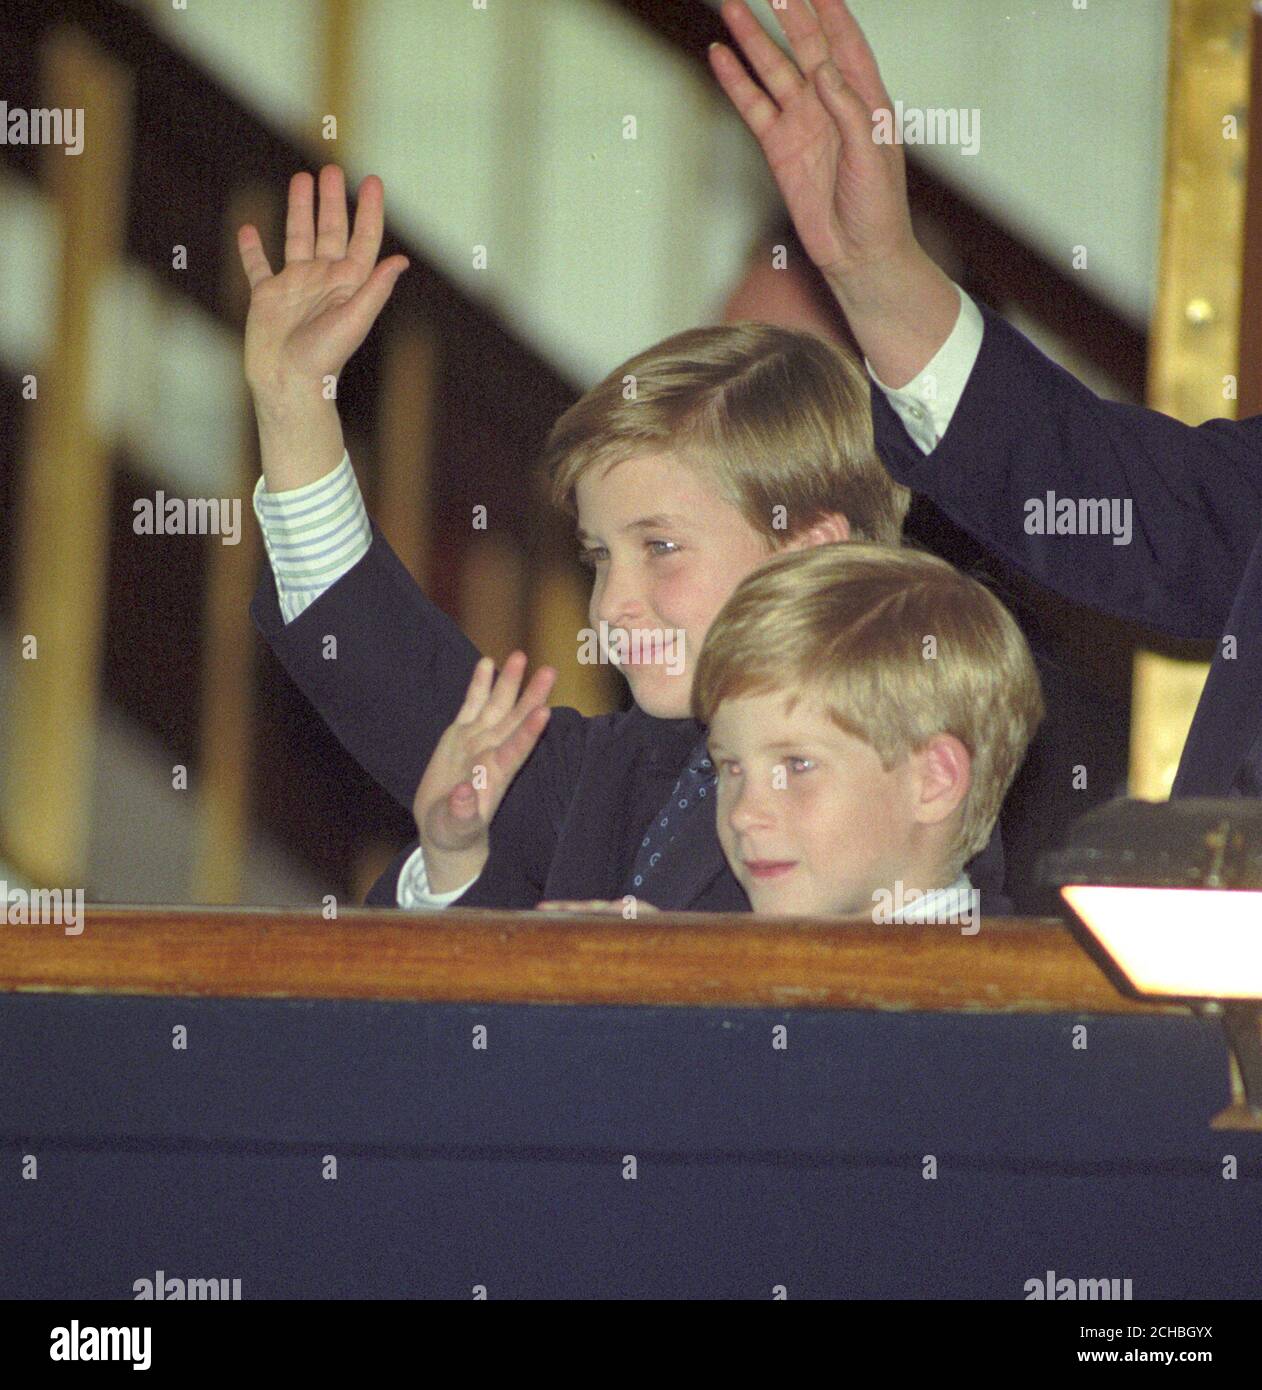 Prinz William, 9, (links) und Prinz Harry, 7, winken zu ihren Eltern, dem Prinzen und der Prinzessin von Wales, als sie an Bord der Royal Yacht Britannia kommen. Früher flog das Königliche Paar in Toronto Flughafen zu Beginn ihrer siebentägigen Besuch in Kanada. Die beiden Fürsten waren gestern angekommen. Stockfoto